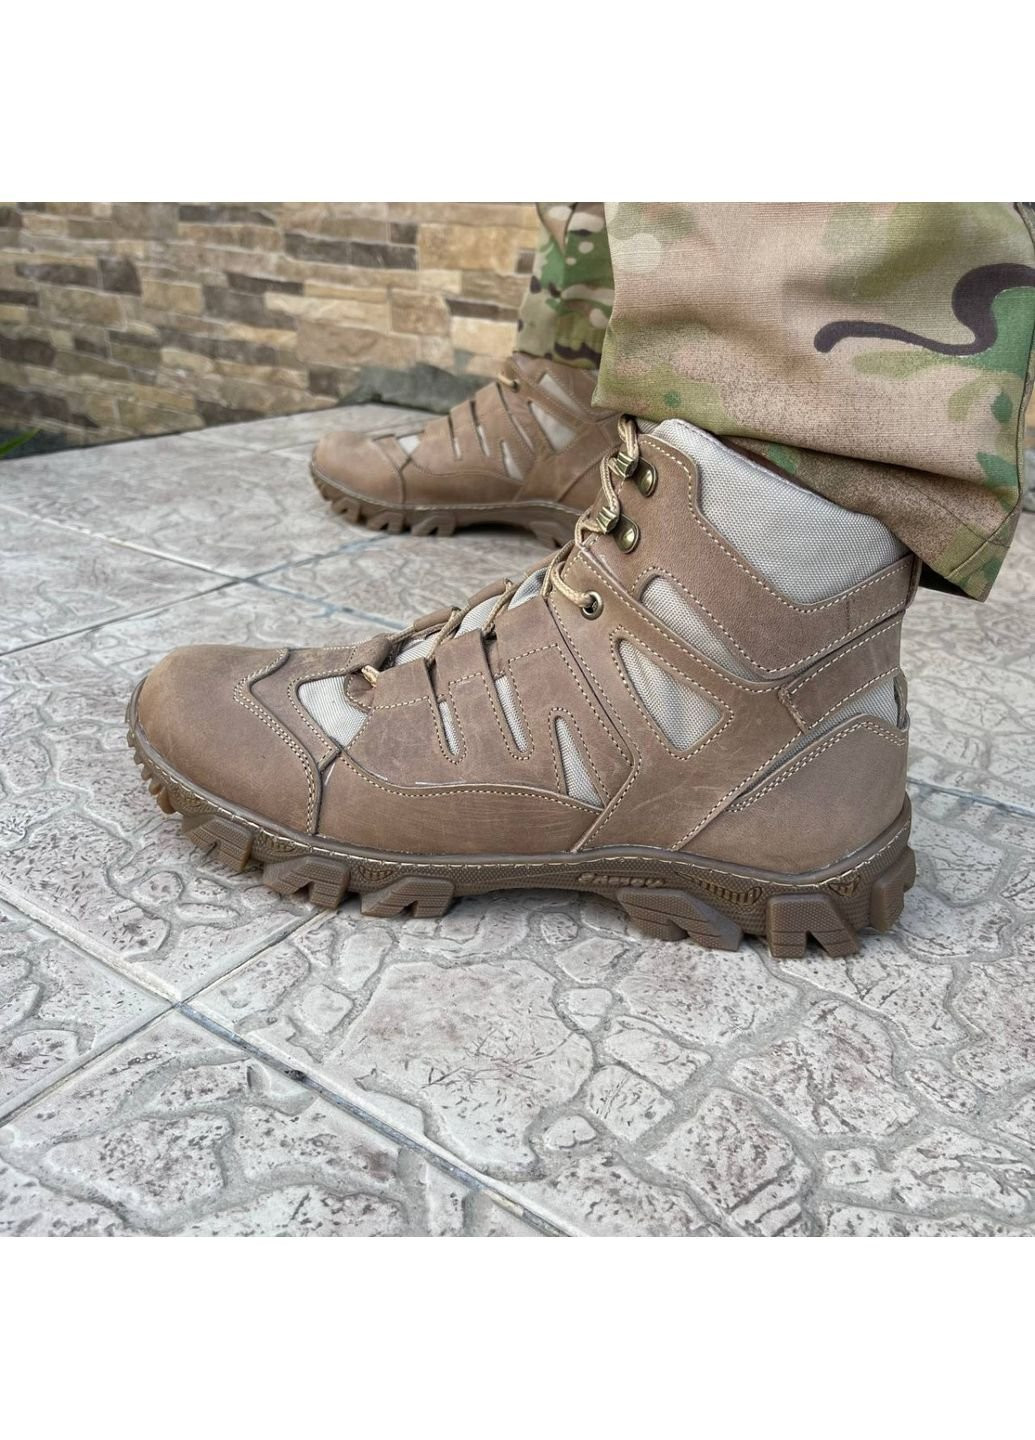 Коричневые осенние ботинки военные тактические всу (зсу) 7529 44 р 29 см коричневые KNF